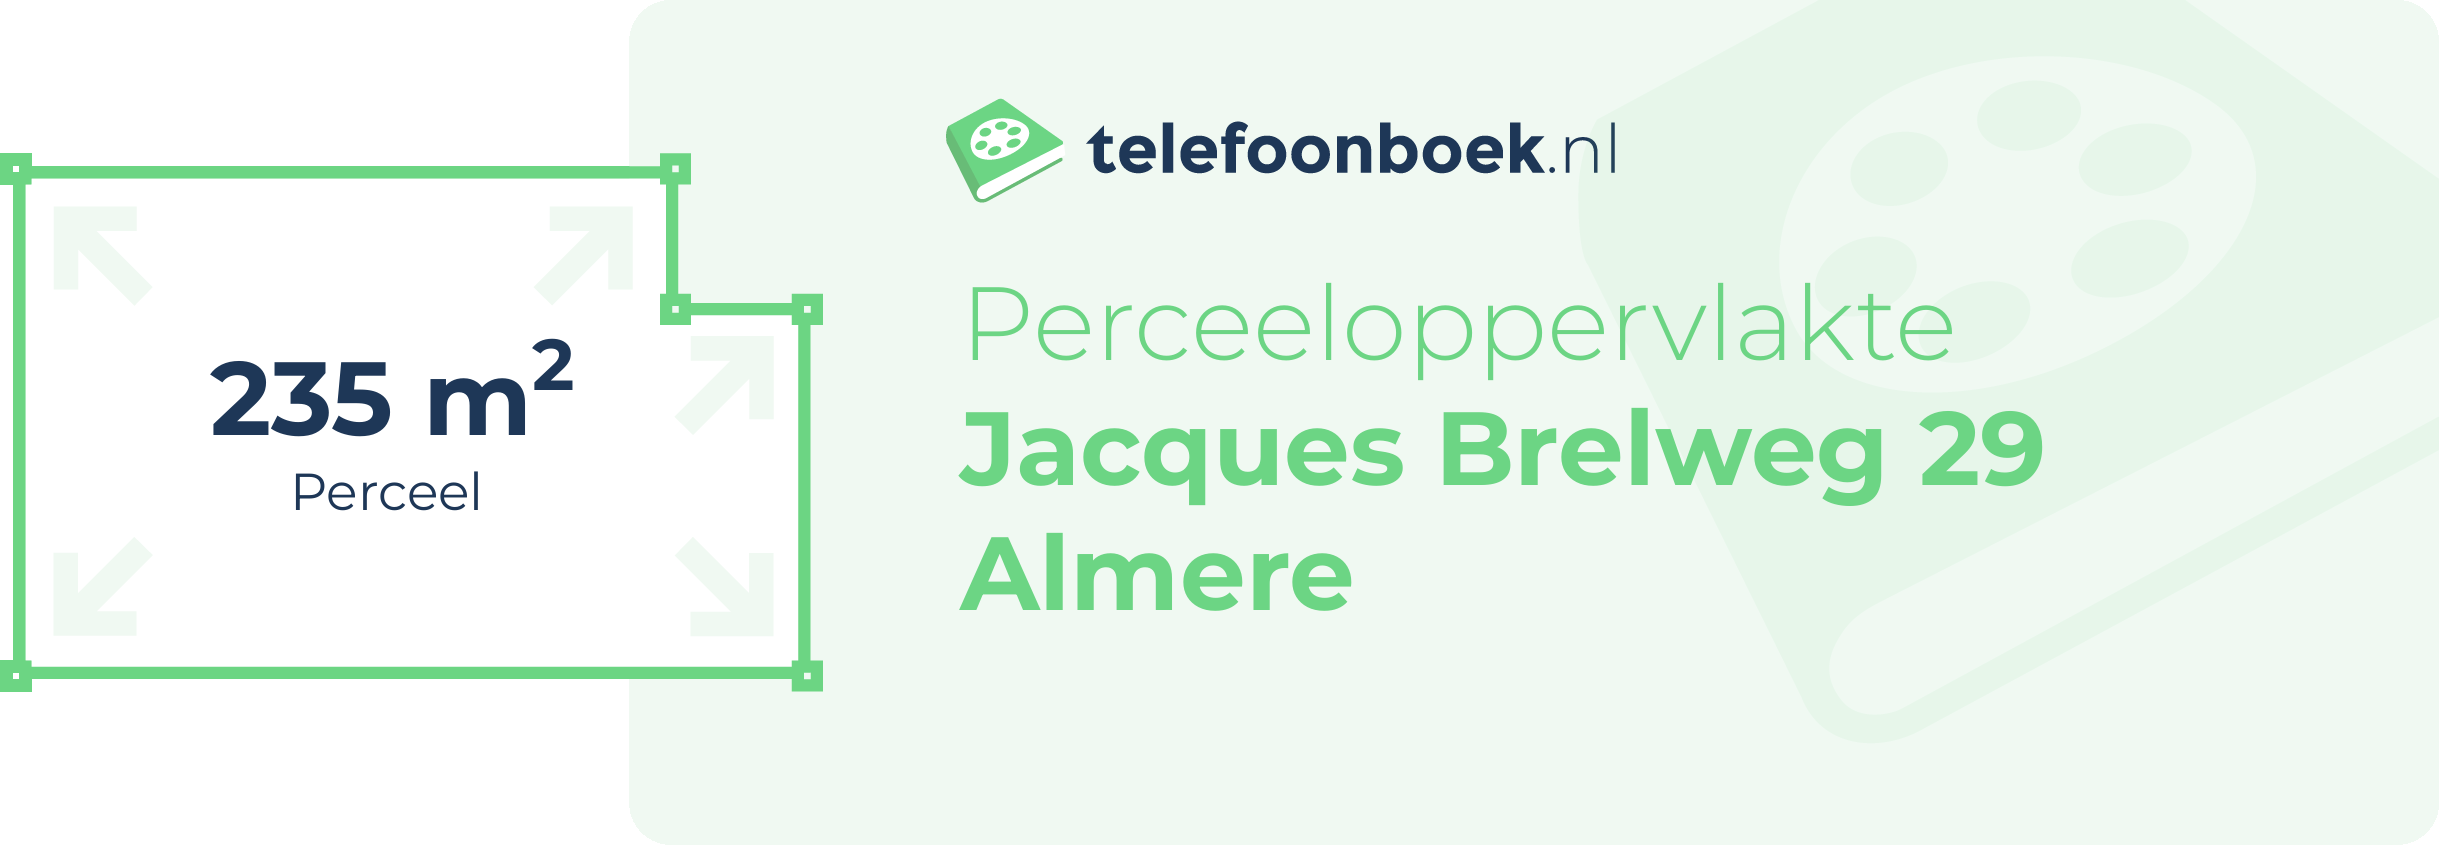 Perceeloppervlakte Jacques Brelweg 29 Almere